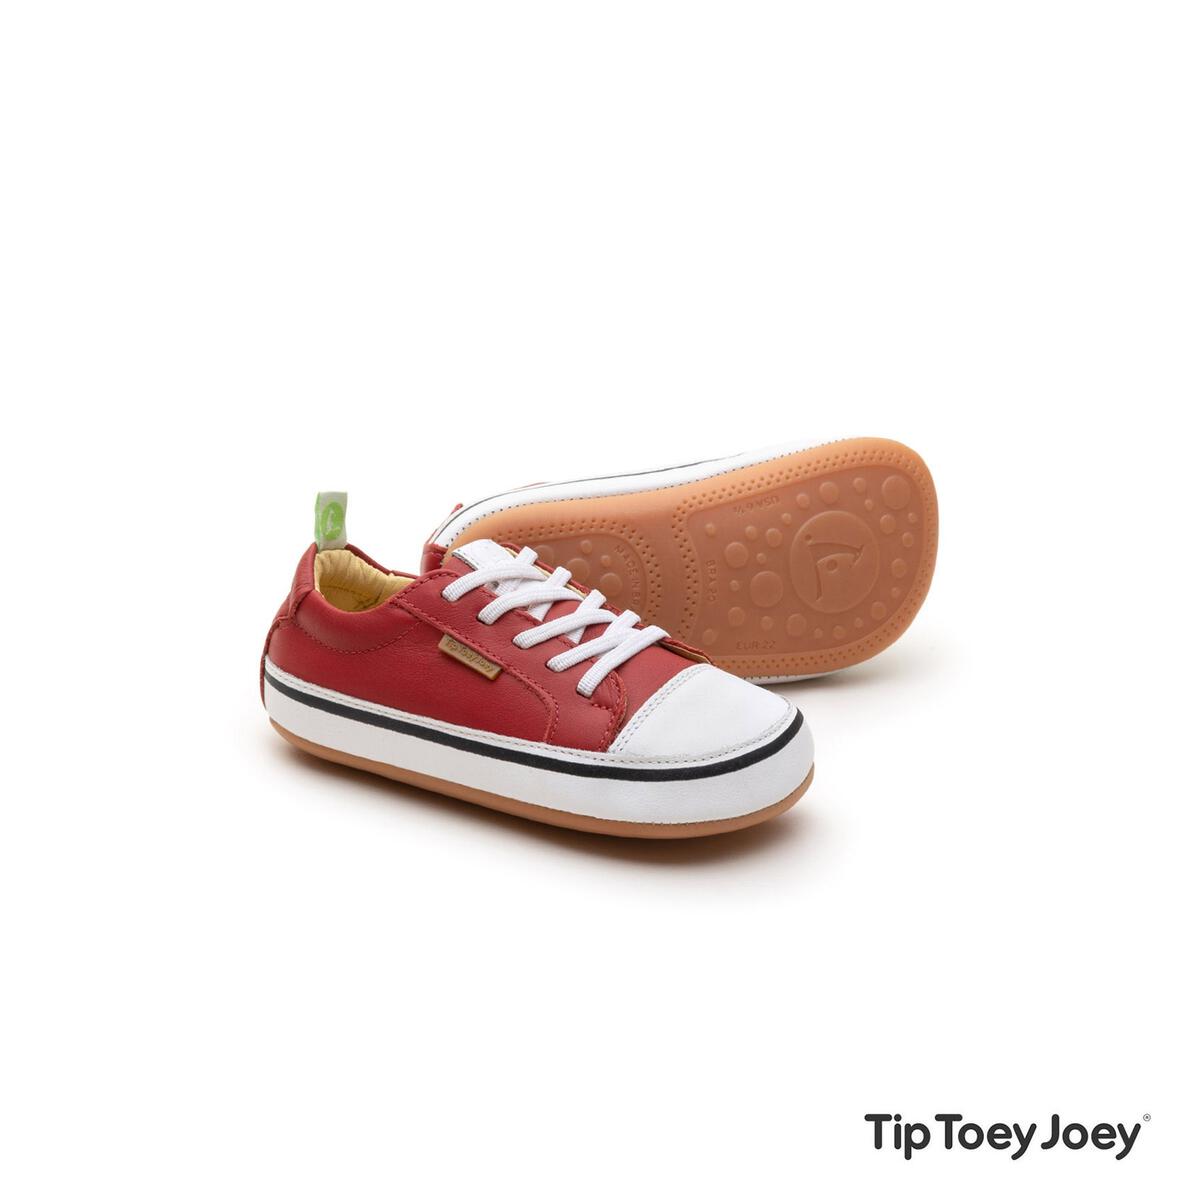 Tip Toey Joey Marca Calzado respetuoso - Caminando Descalzos